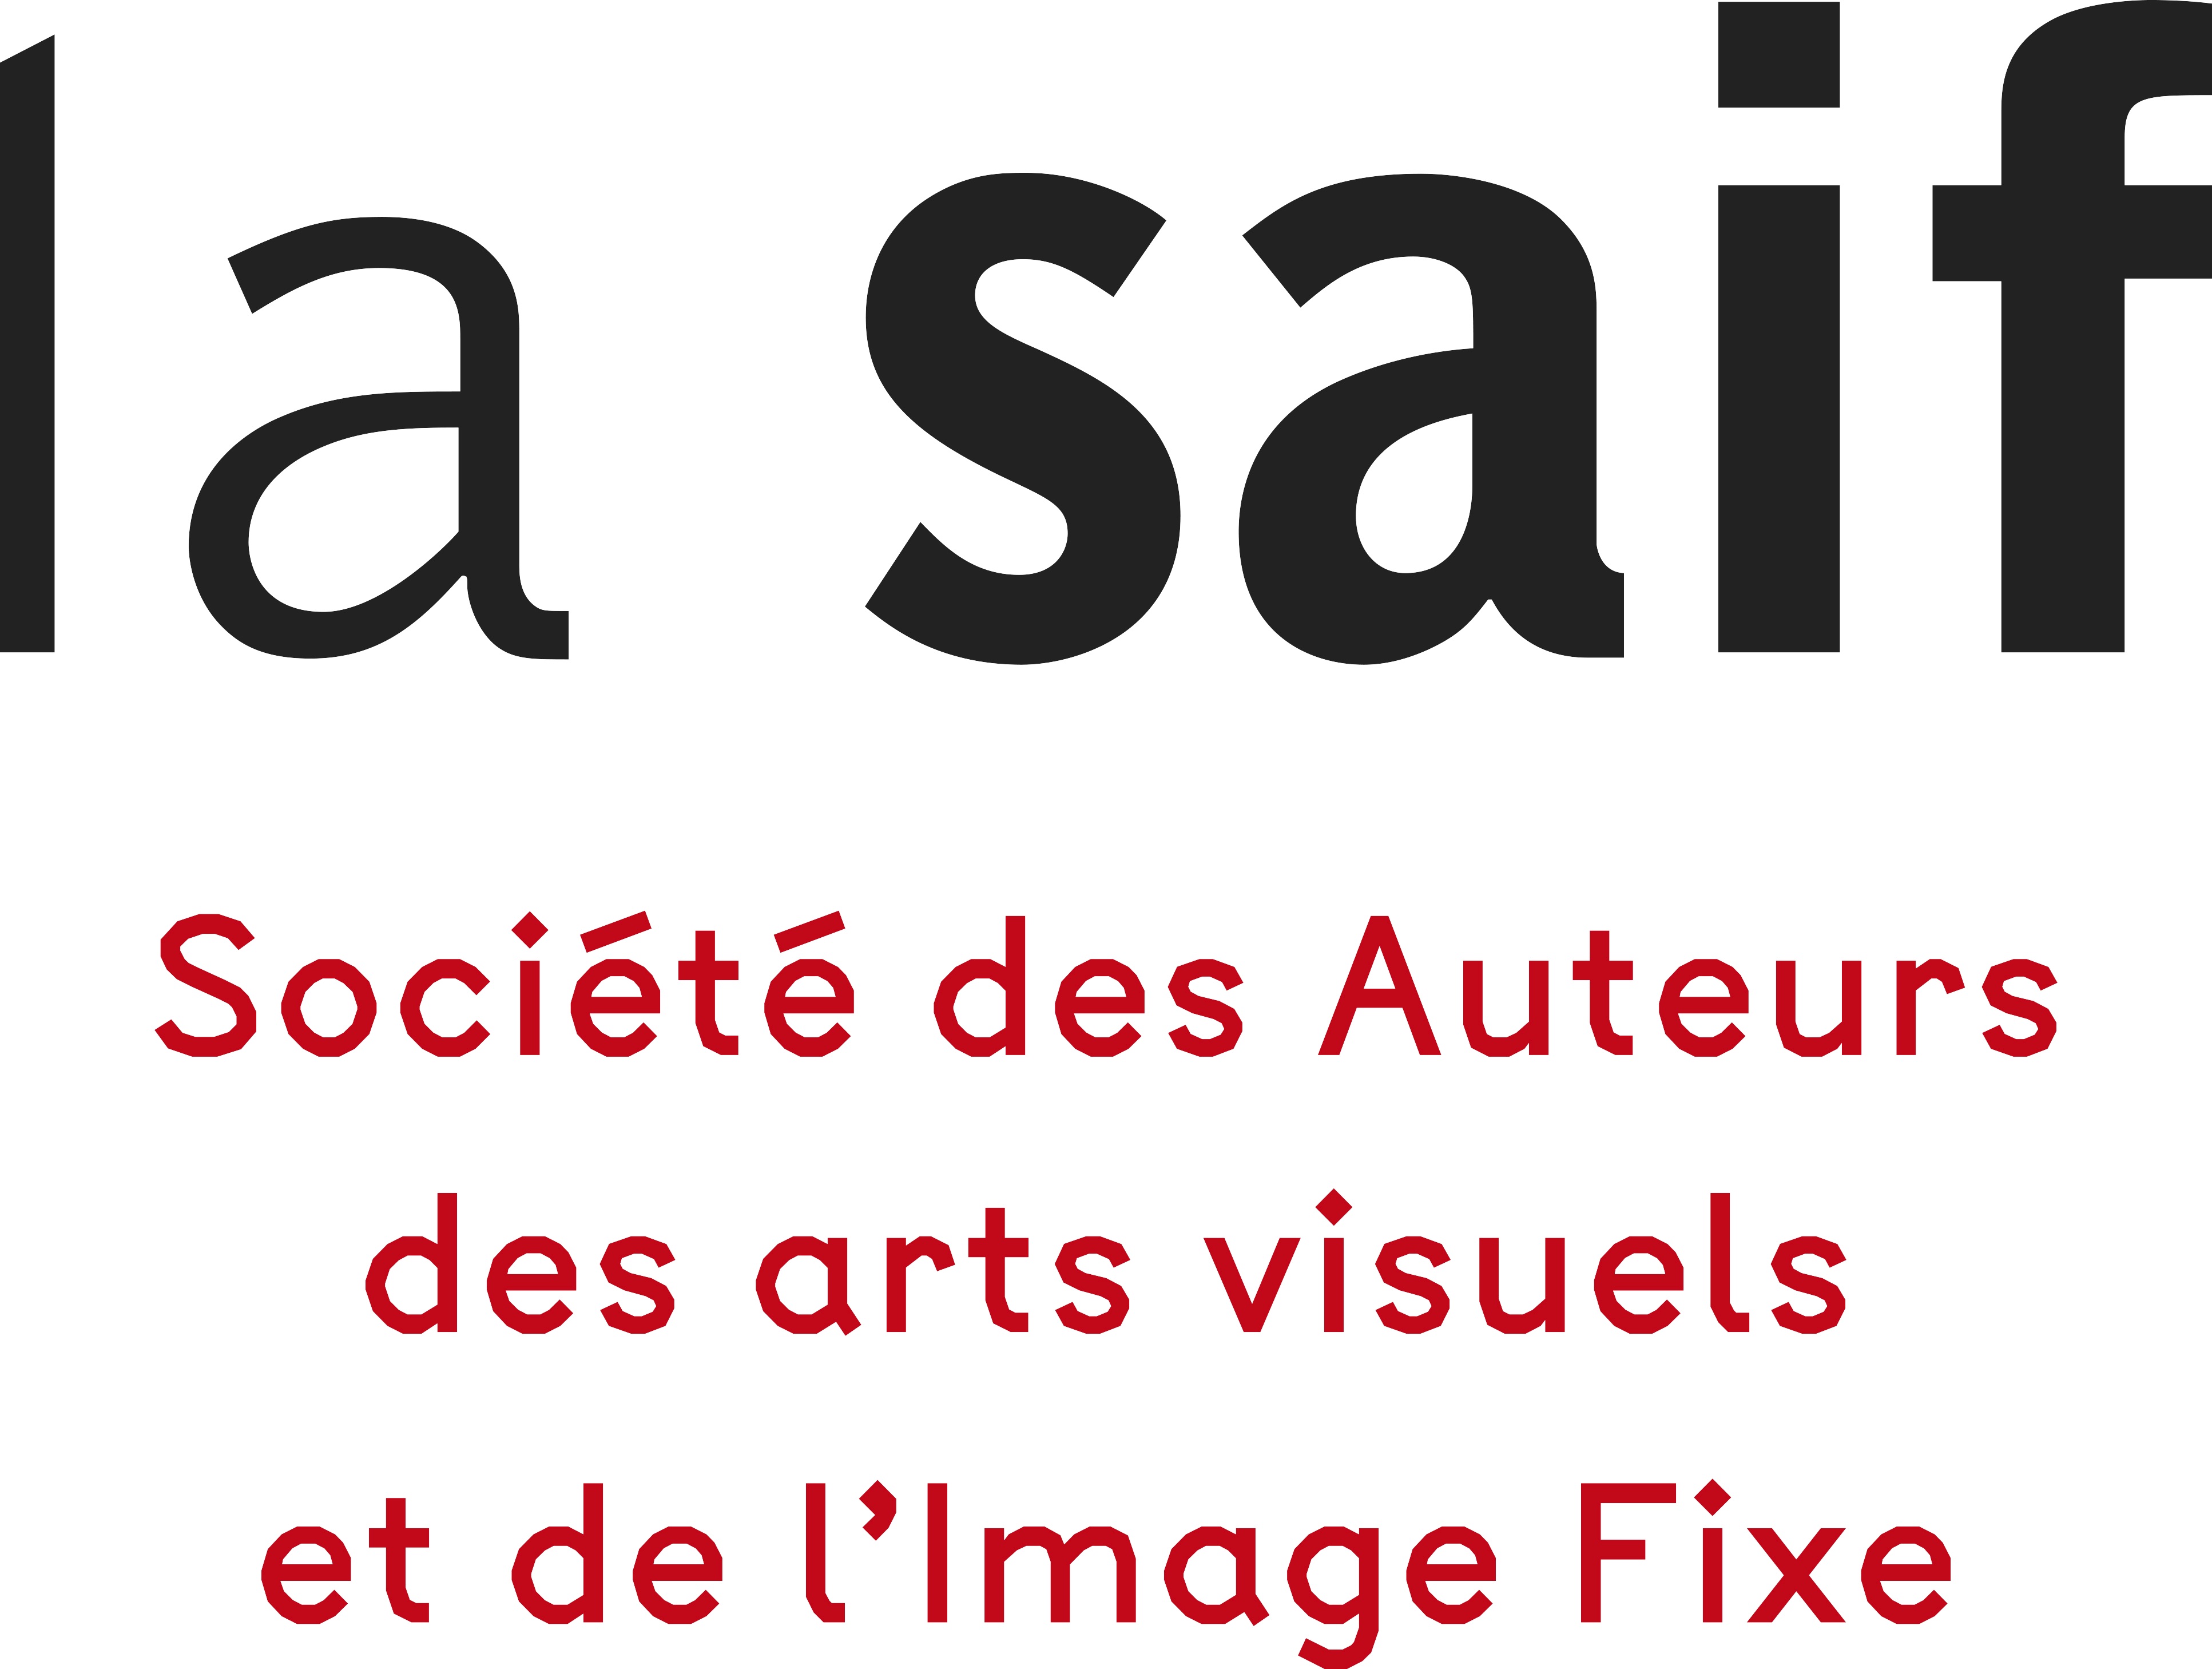 La Société des Auteurs des arts visuels et de l'Image Fixe